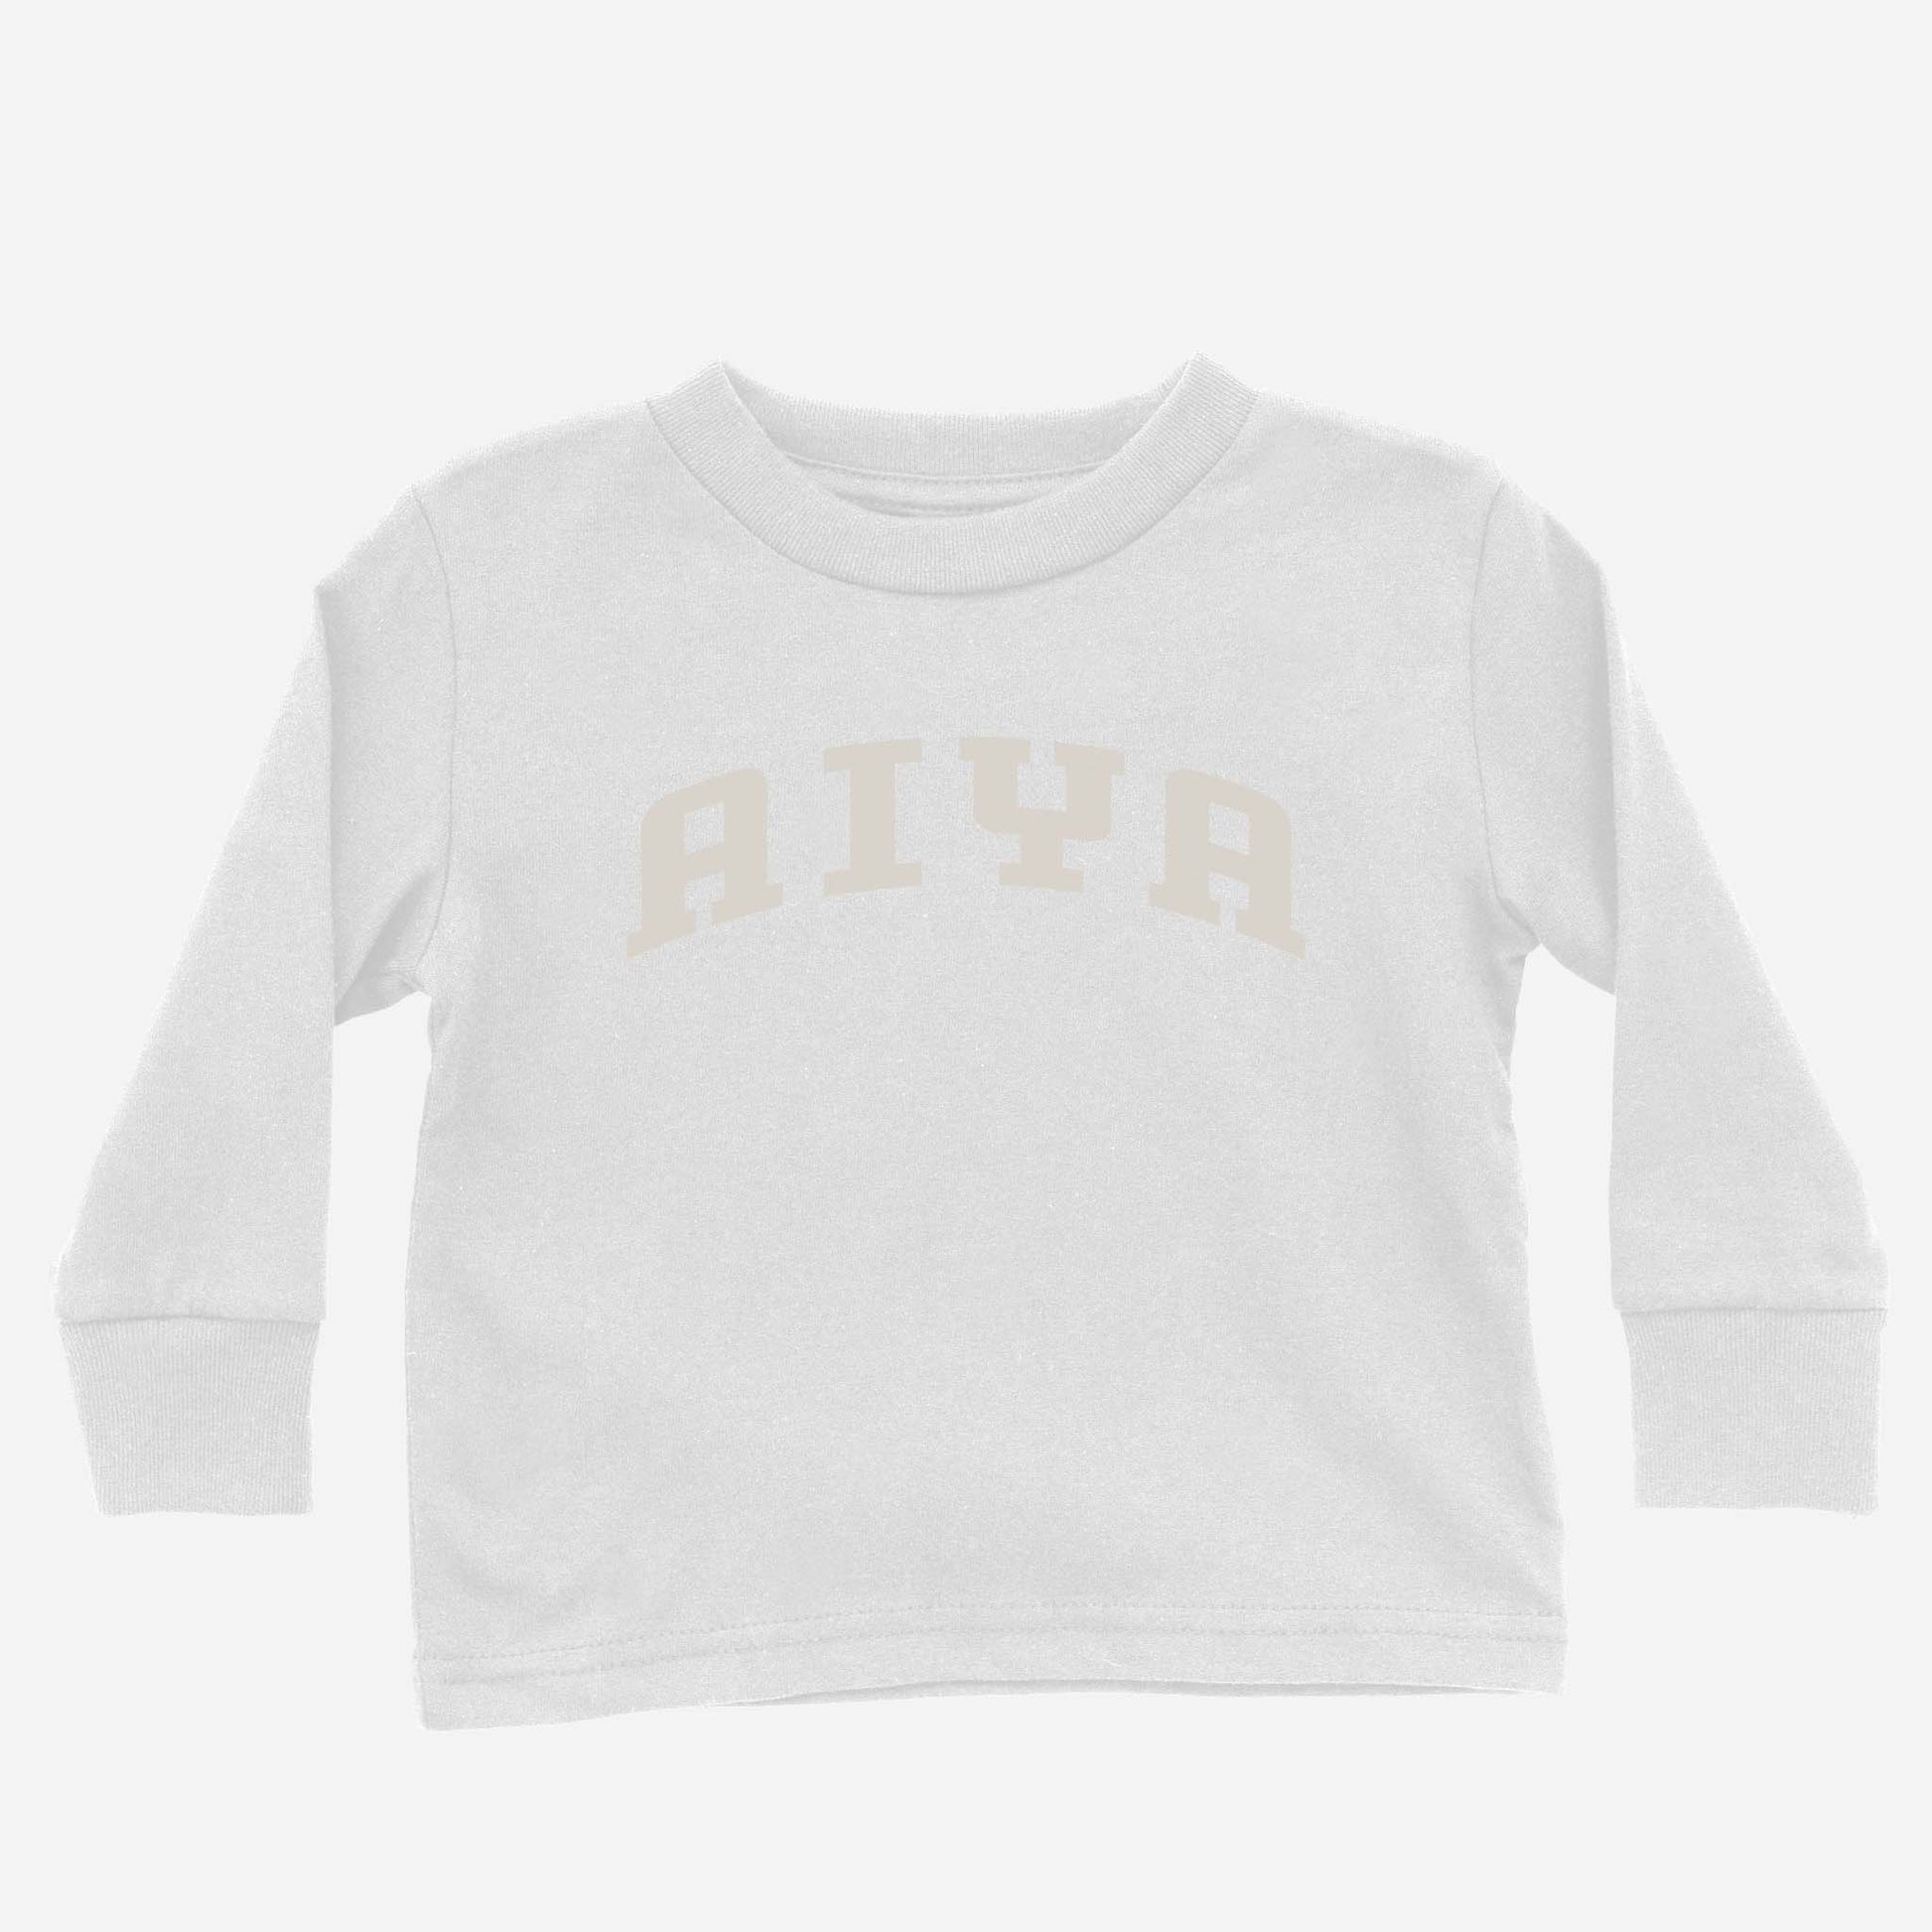 Aiya Toddler Long Sleeve Shirt white'- Asian Baby Clothing